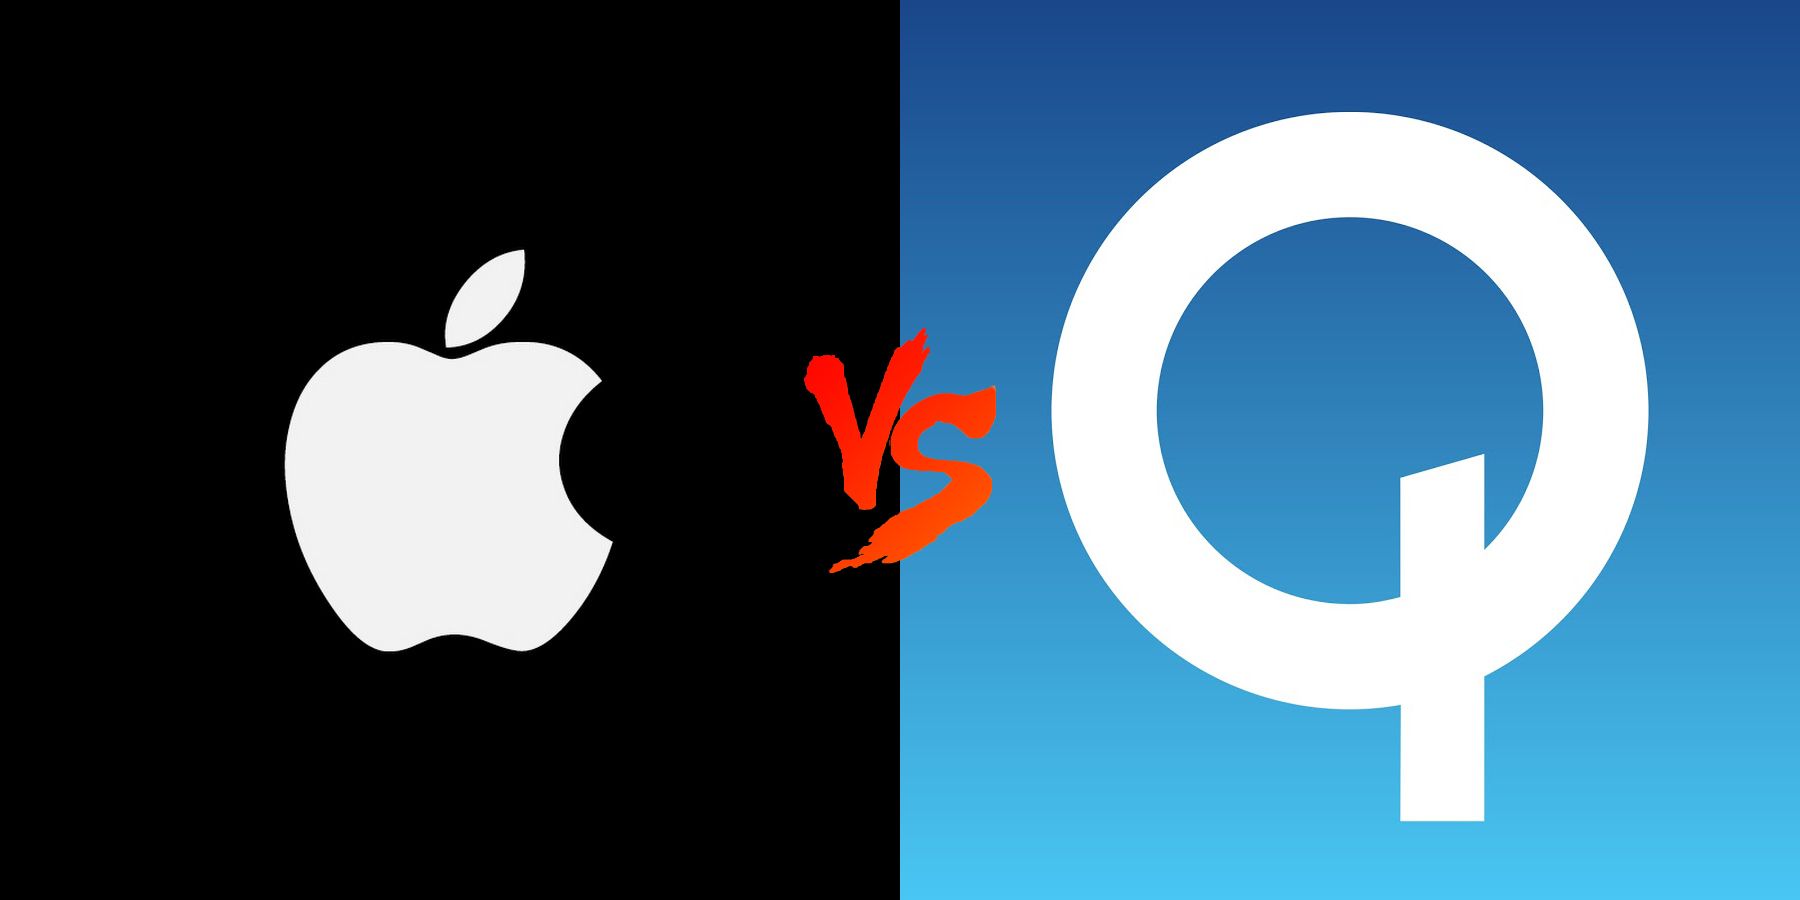 Qualcomm ยื่นฟ้อง Apple ละเมิดสิทธิบัตร หวังให้ทางการสั่งระงับการขายและการผลิต iPhone ในจีน